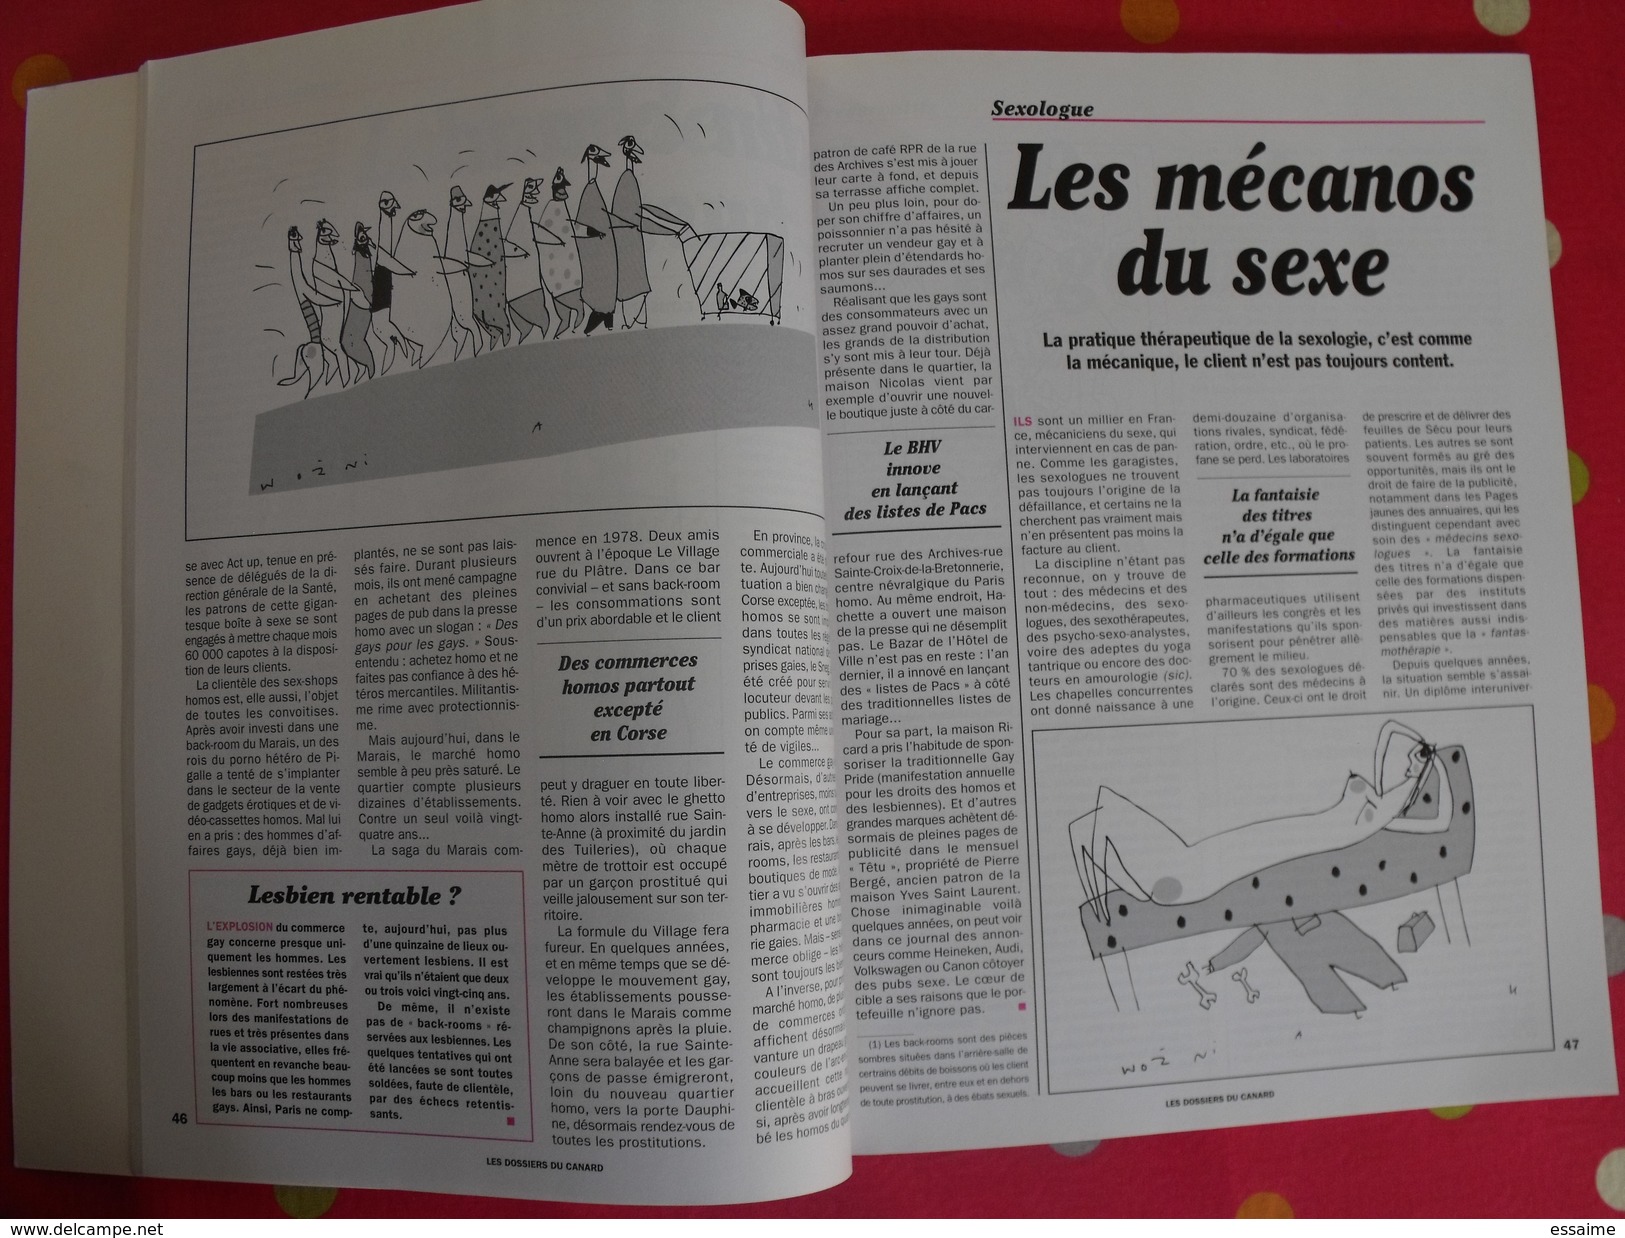 Le Cul Mis à Nu.. Les Dossiers Du Canard Enchaîné Sur Le Sexe (télé, Vacances Loisirs, Cuiné...). 2001 - Humour